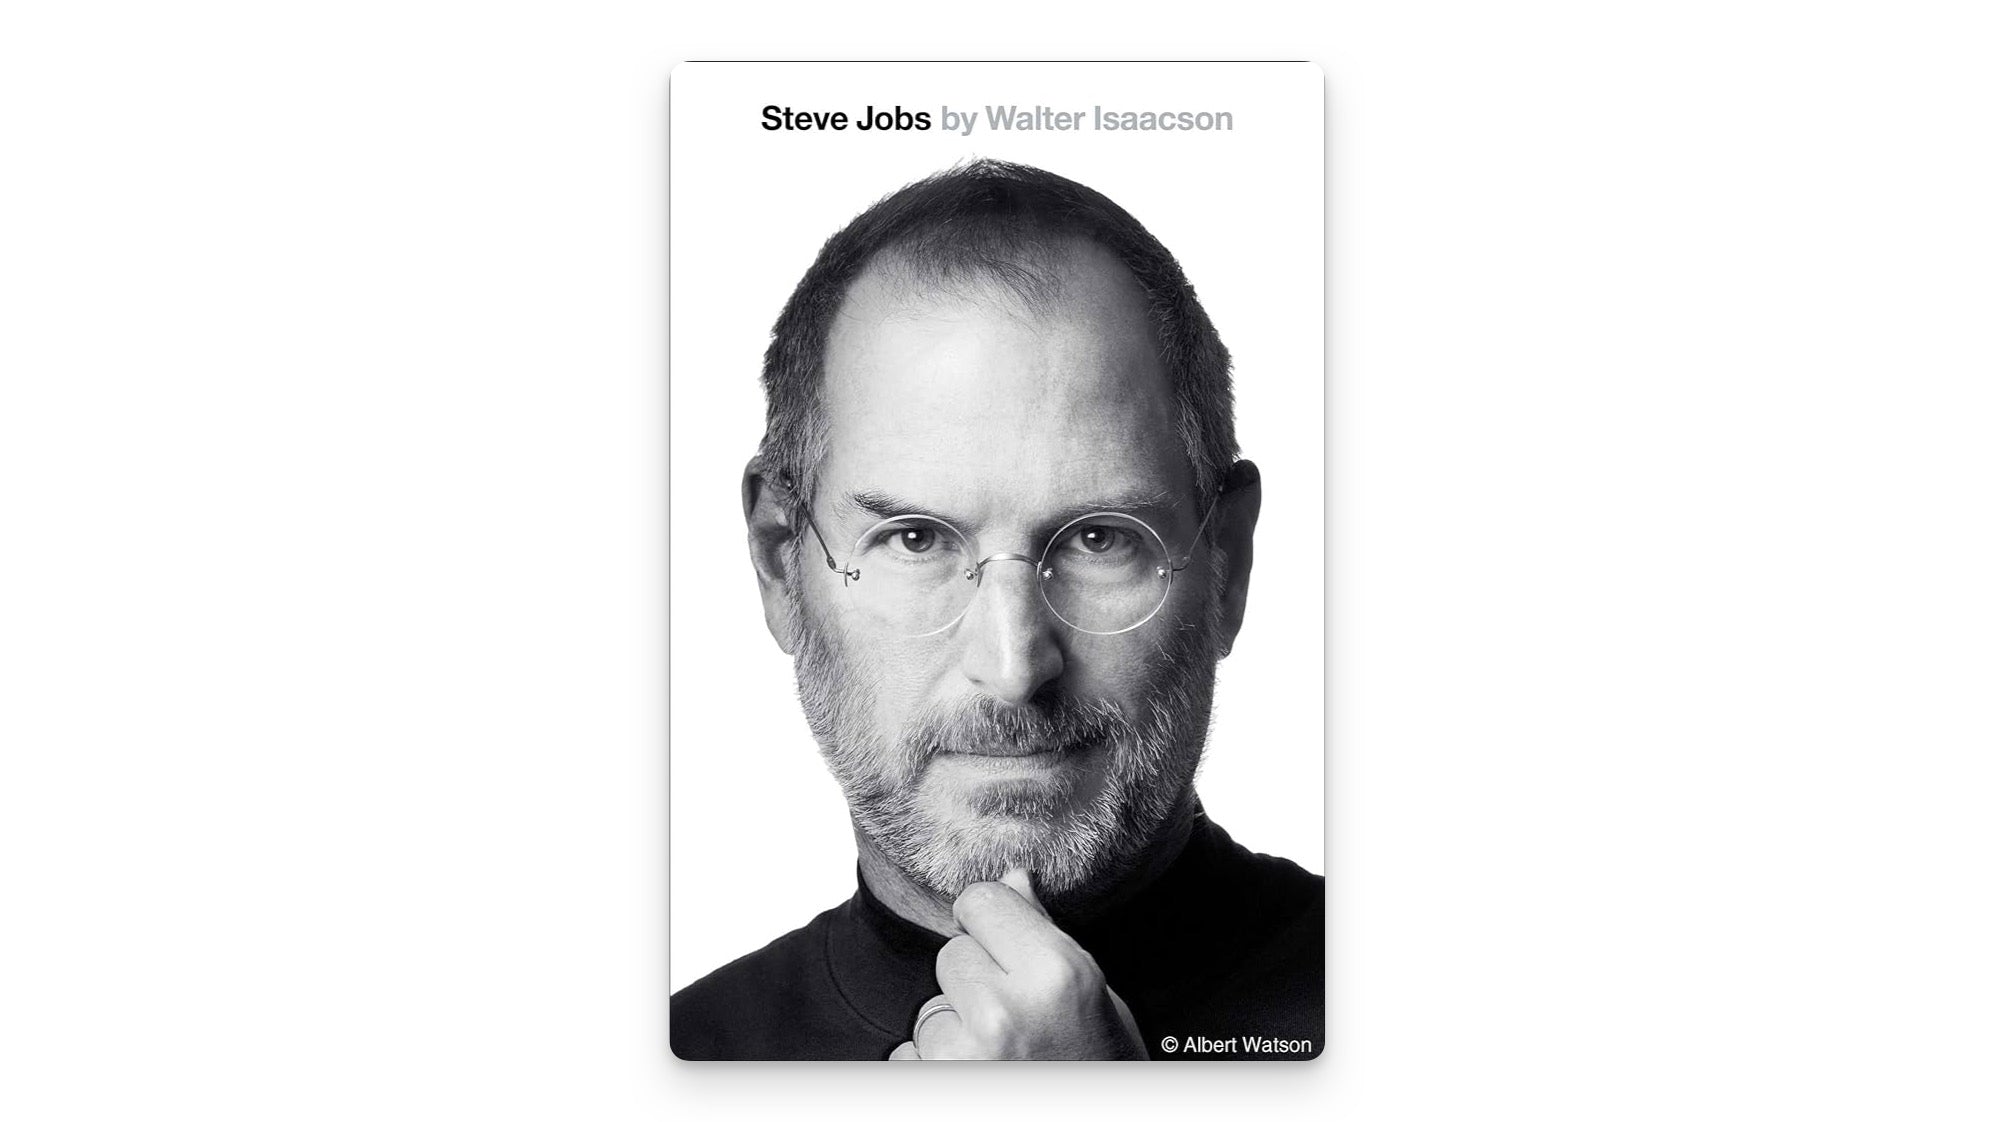 Book cover of one of the best entrepreneur books, Steve Jobs